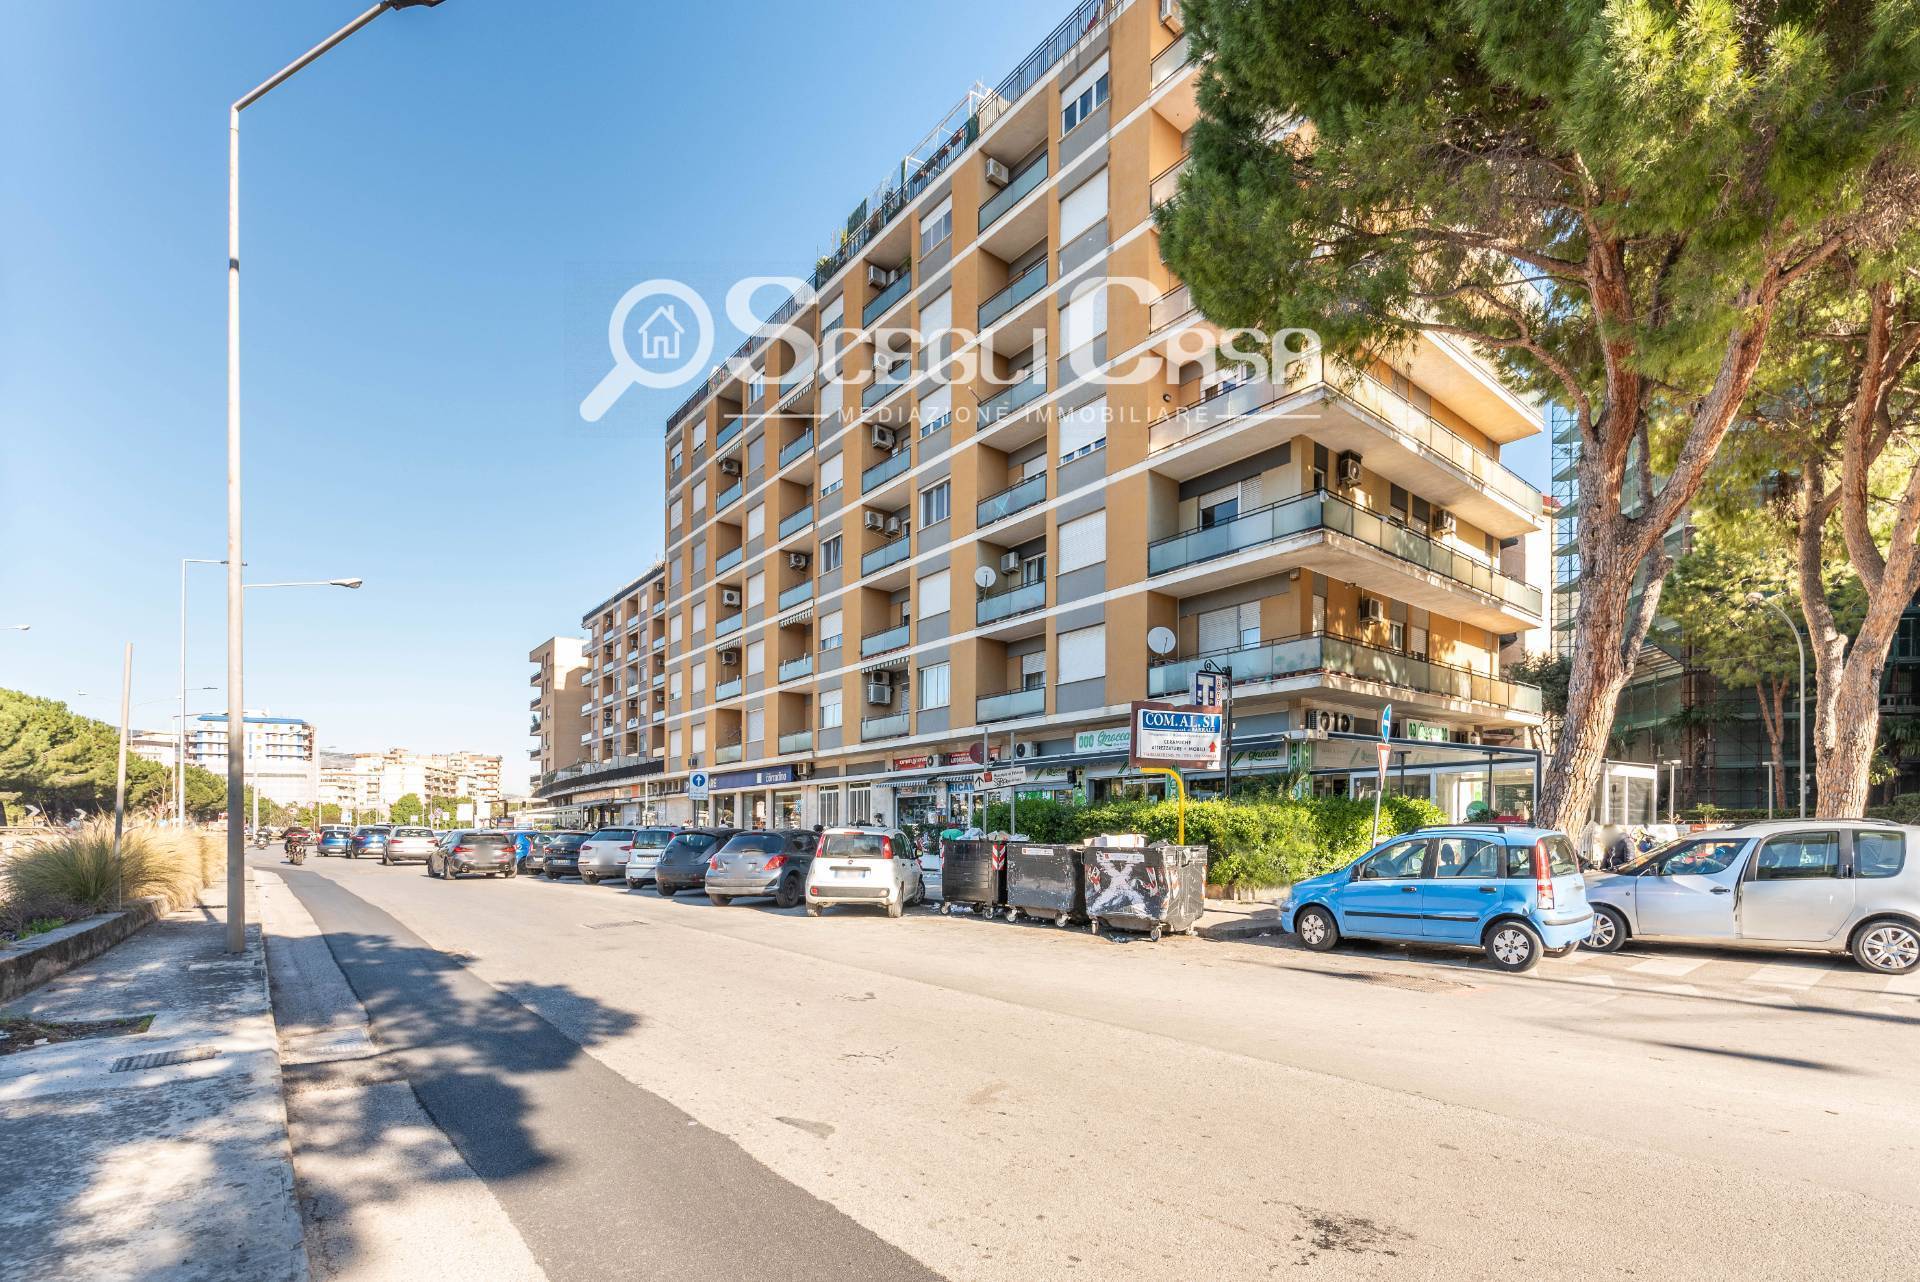 Appartamento in vendita a Palermo, 5 locali, prezzo € 225.000 | PortaleAgenzieImmobiliari.it